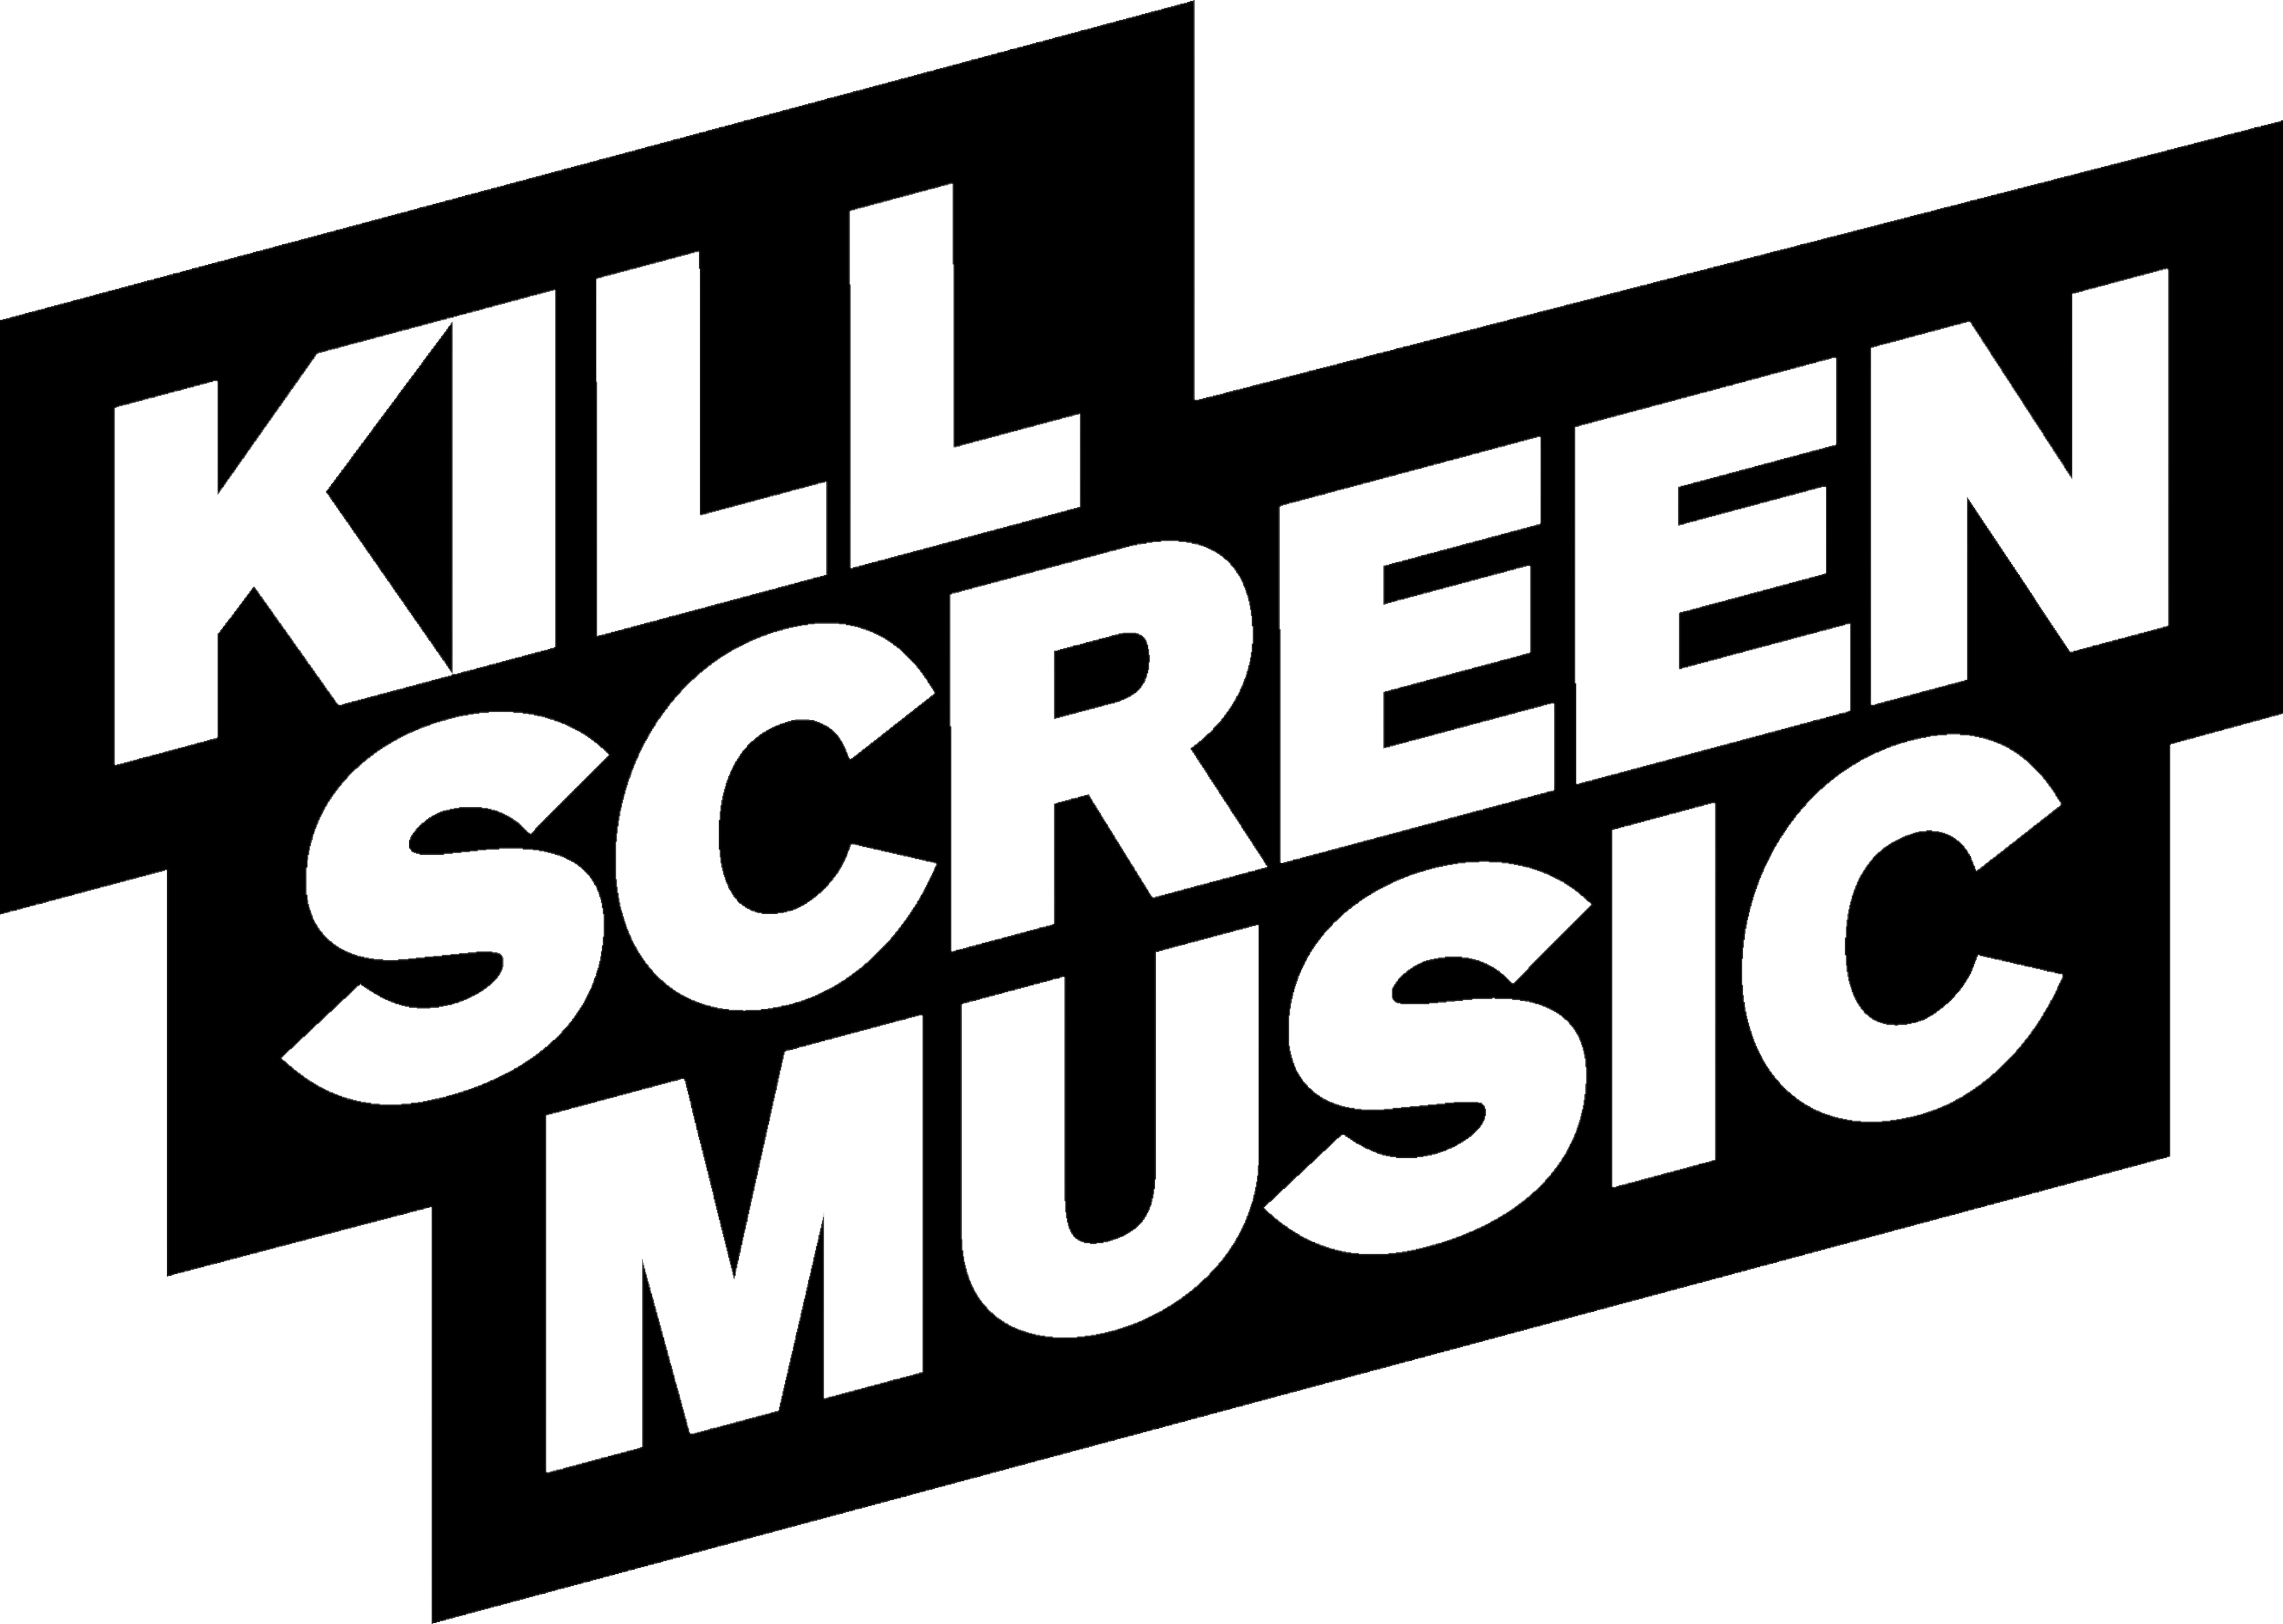 Kill screen